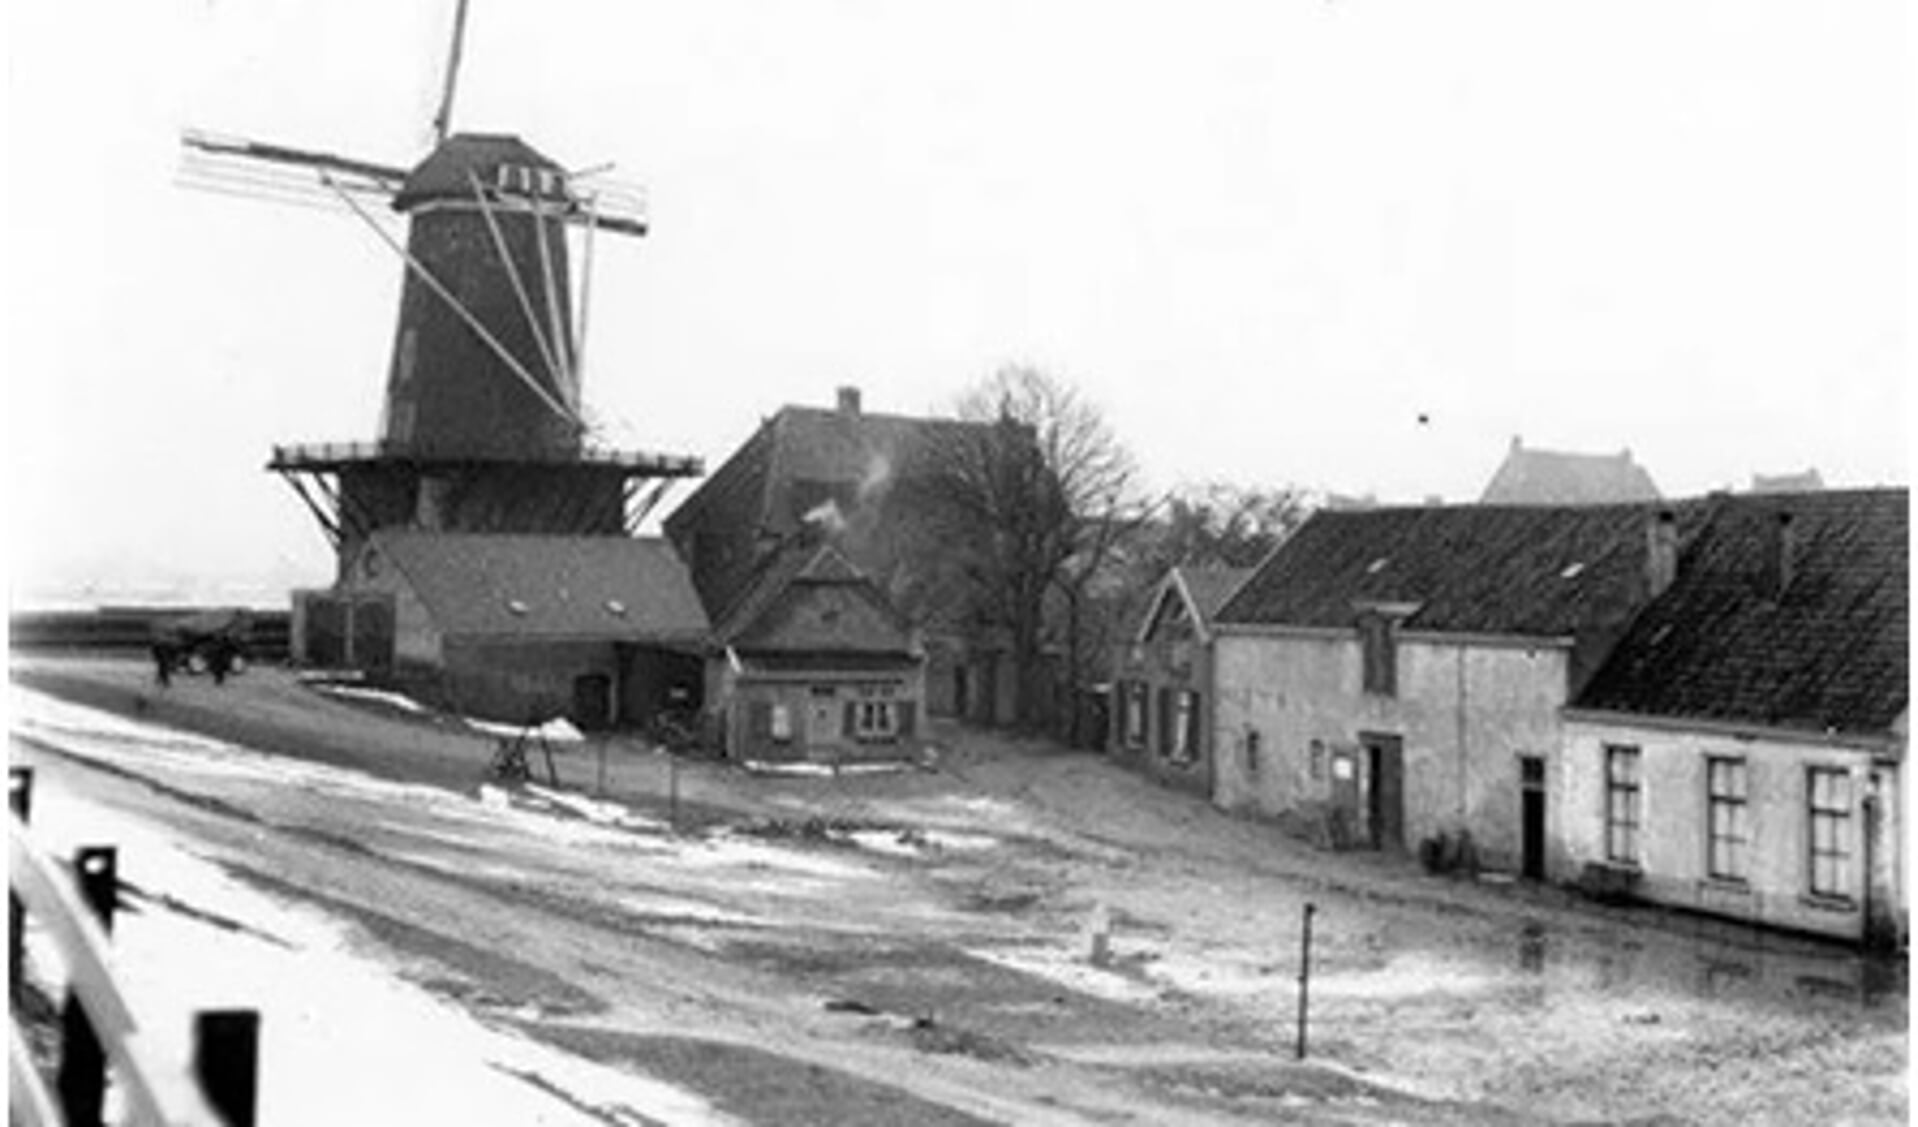 Foto van het huis rond
1940, (hierboven
ingezoomd) afkomstig uit
wijktoenwijknu.nl